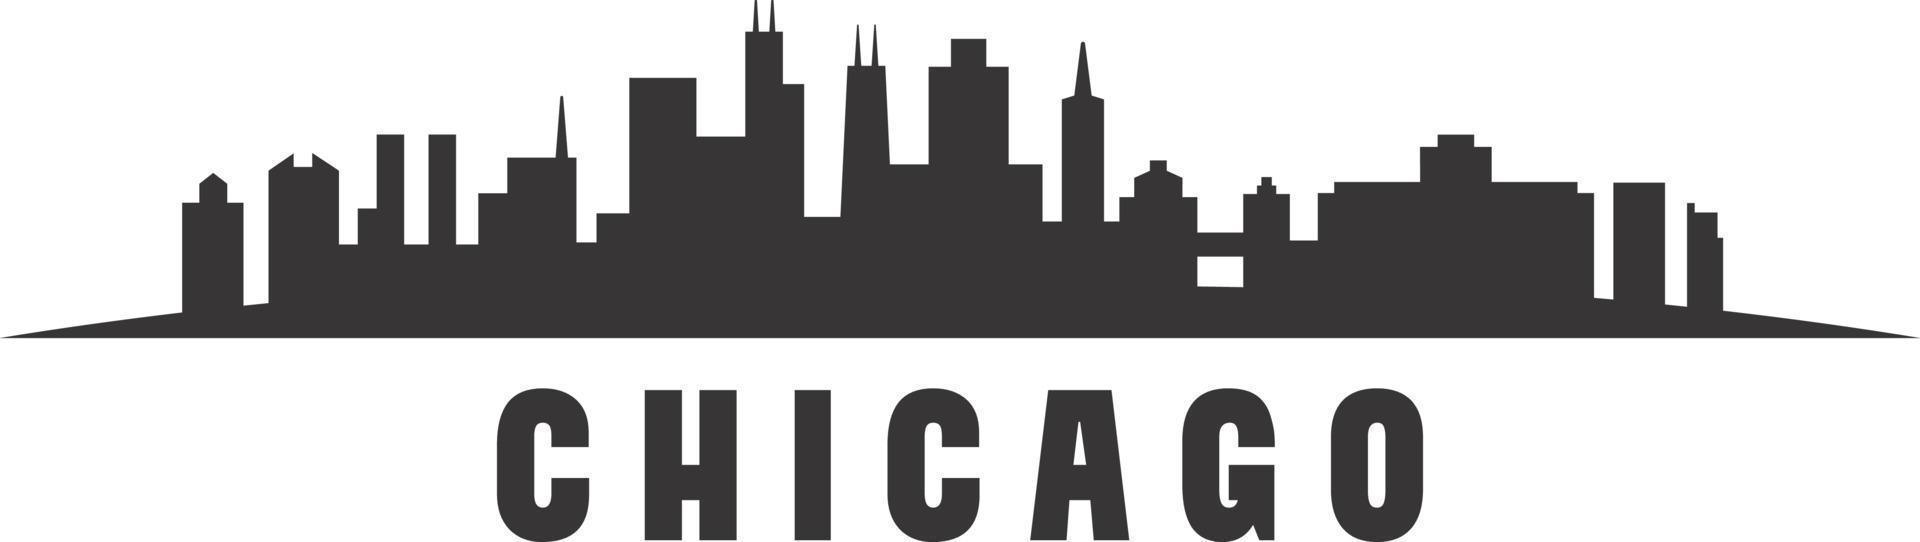 chicago skyline siluett vektor